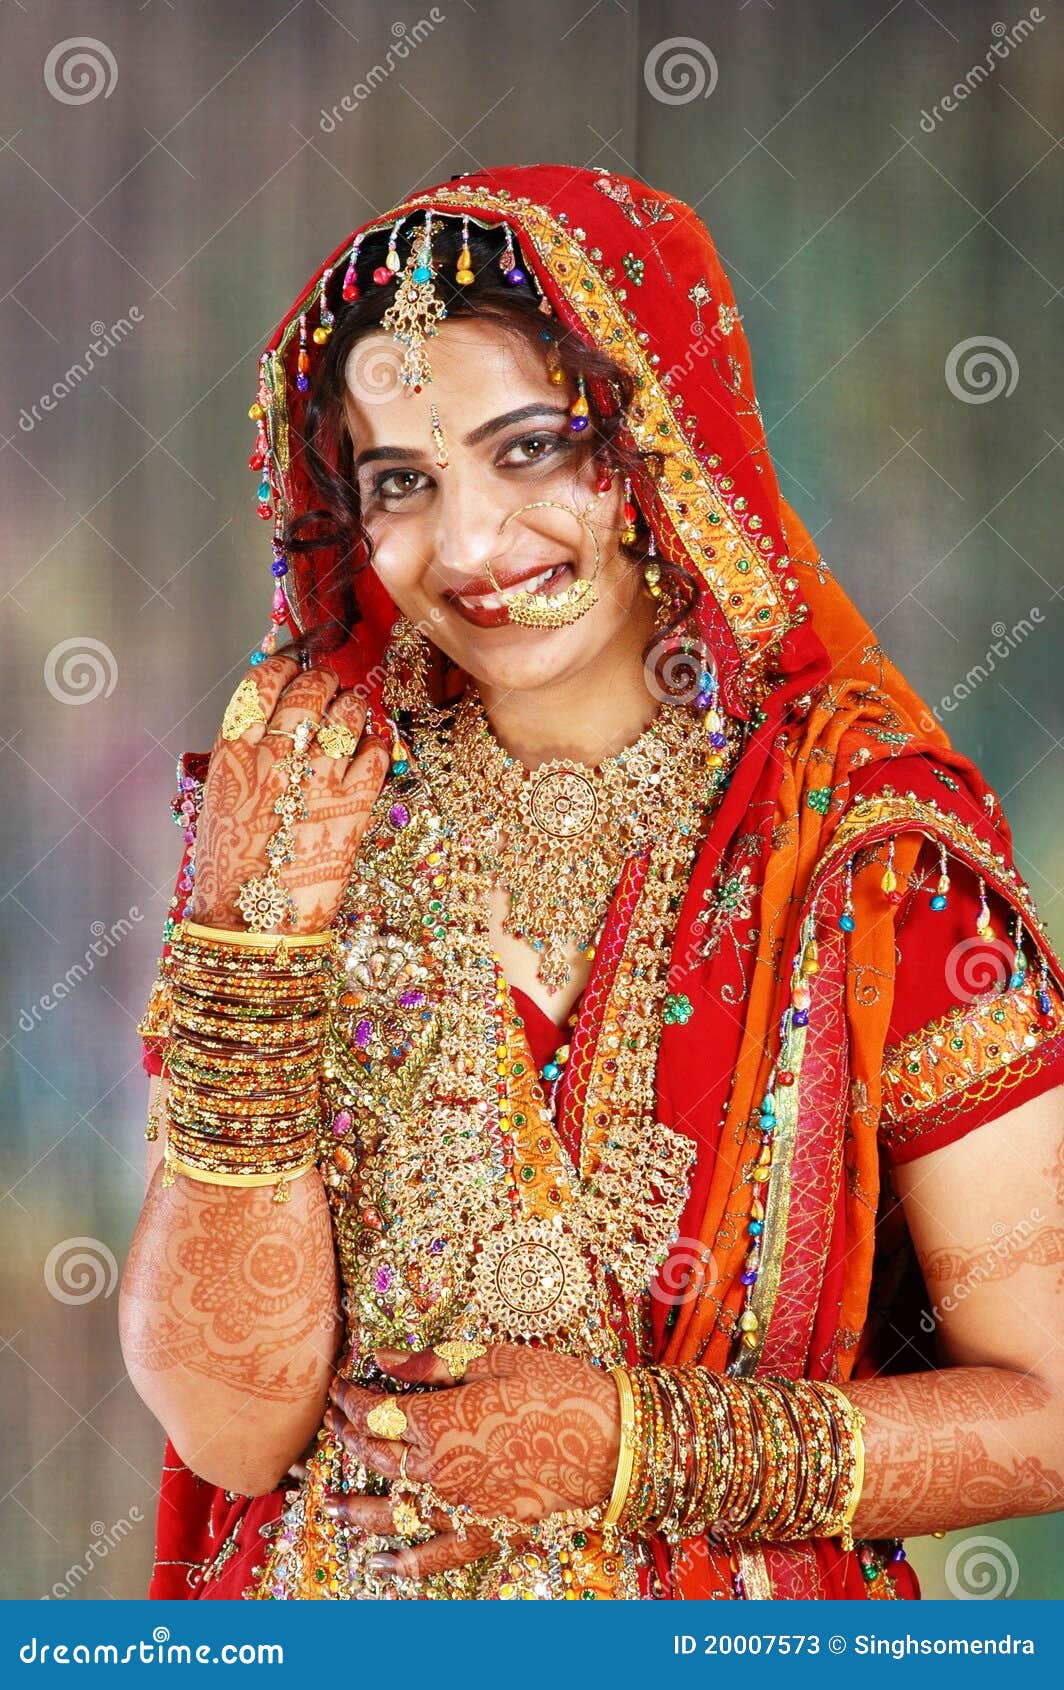 Vestiti Da Sposa Indiani.Sposa Indiana Nella Sua Rappresentazione Del Vestito Da Cerimonia